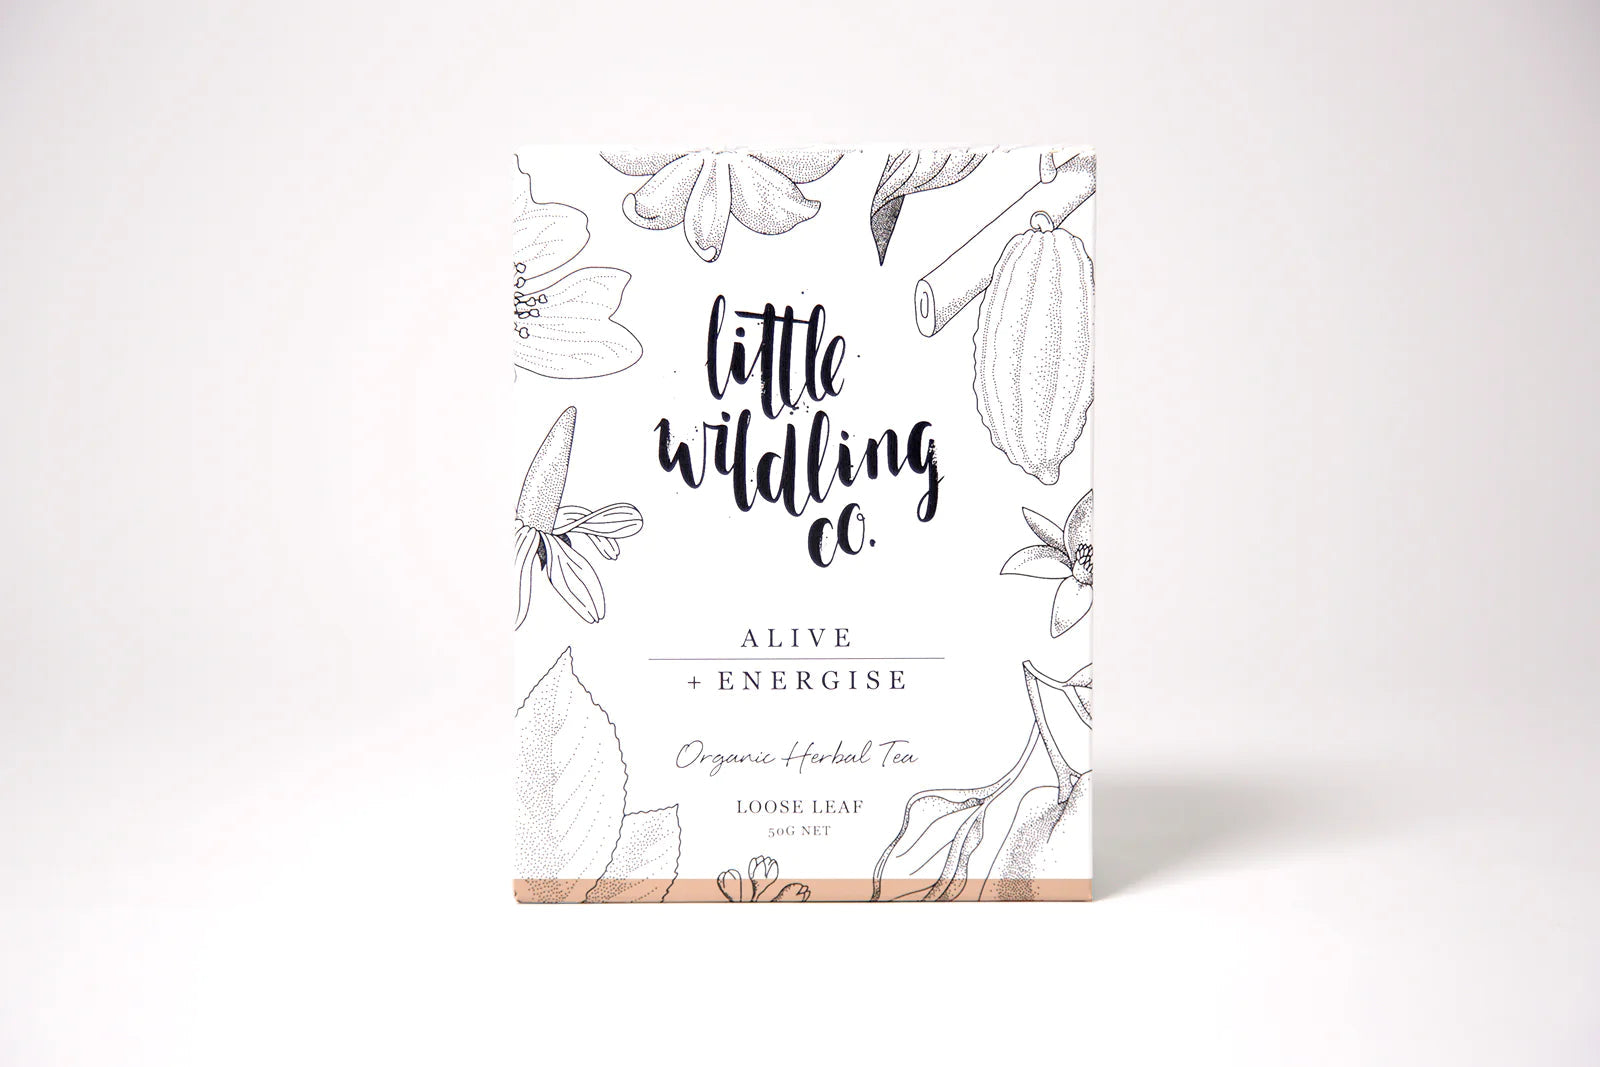 Little Wildling Co Loose Leaf Tea - Alive & Energise